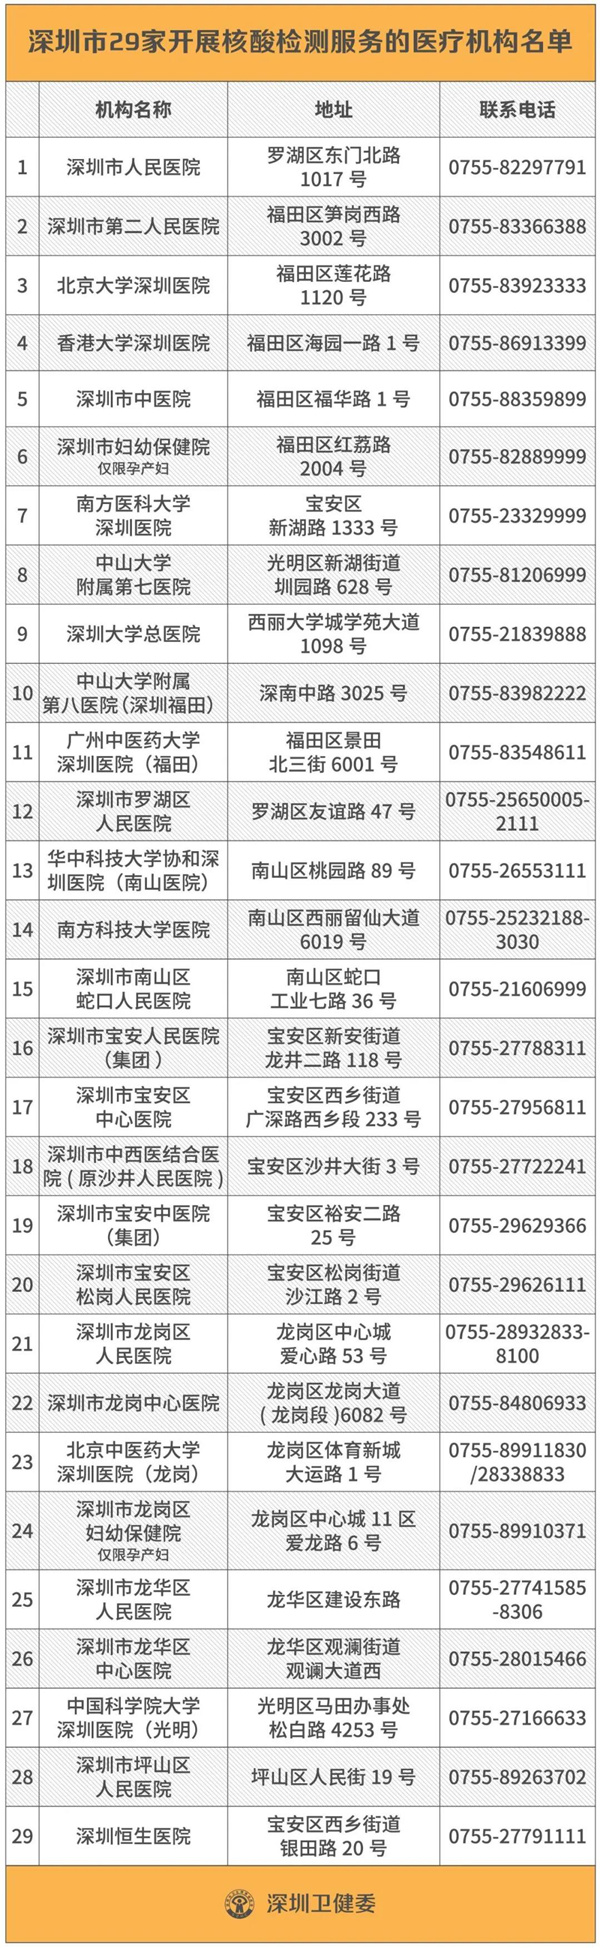 2020深圳核酸检测医院机构名单及电话